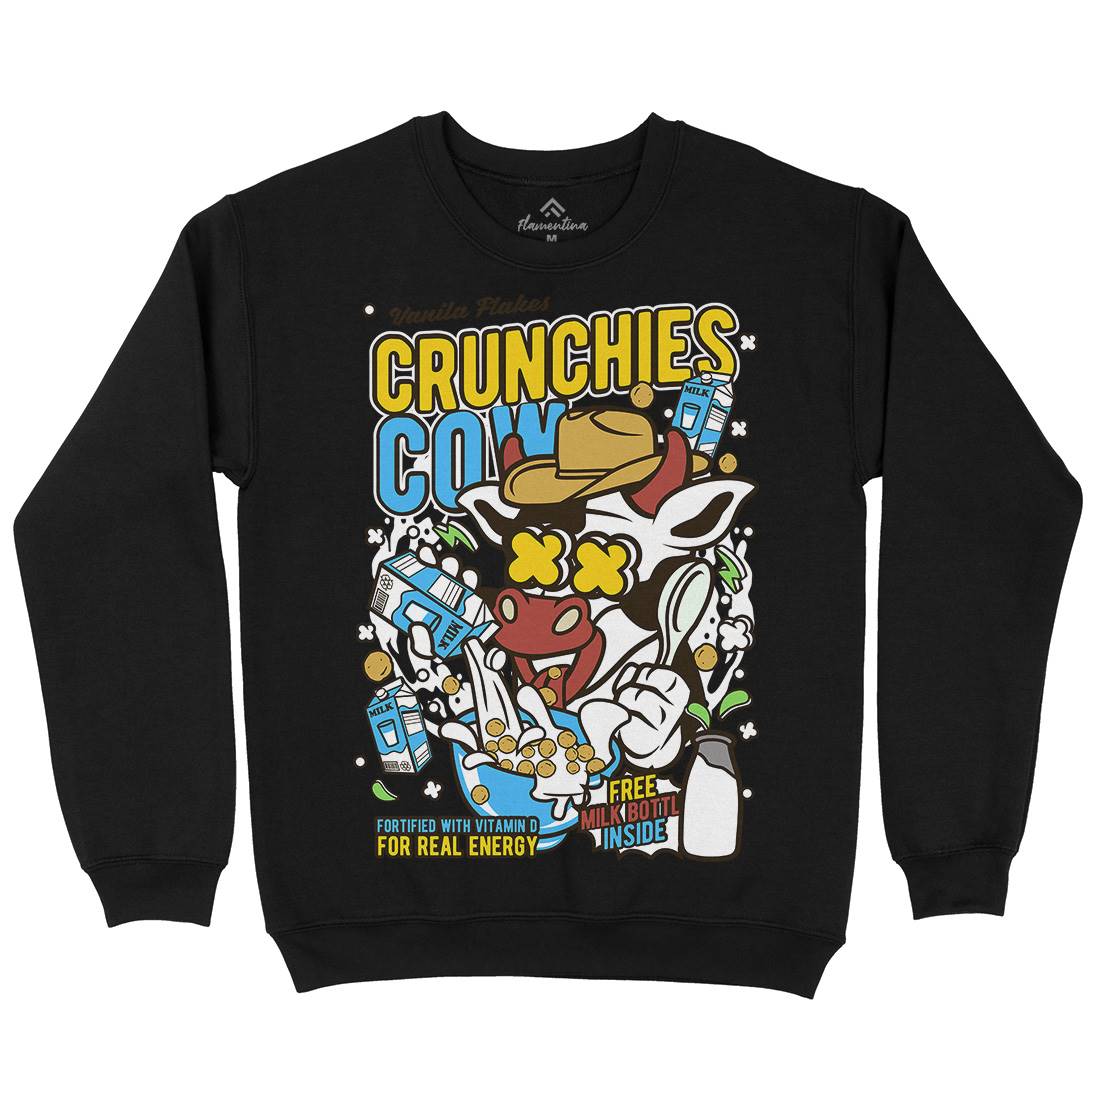 Crunchies Cow Mens Crew Neck Sweatshirt Food C533